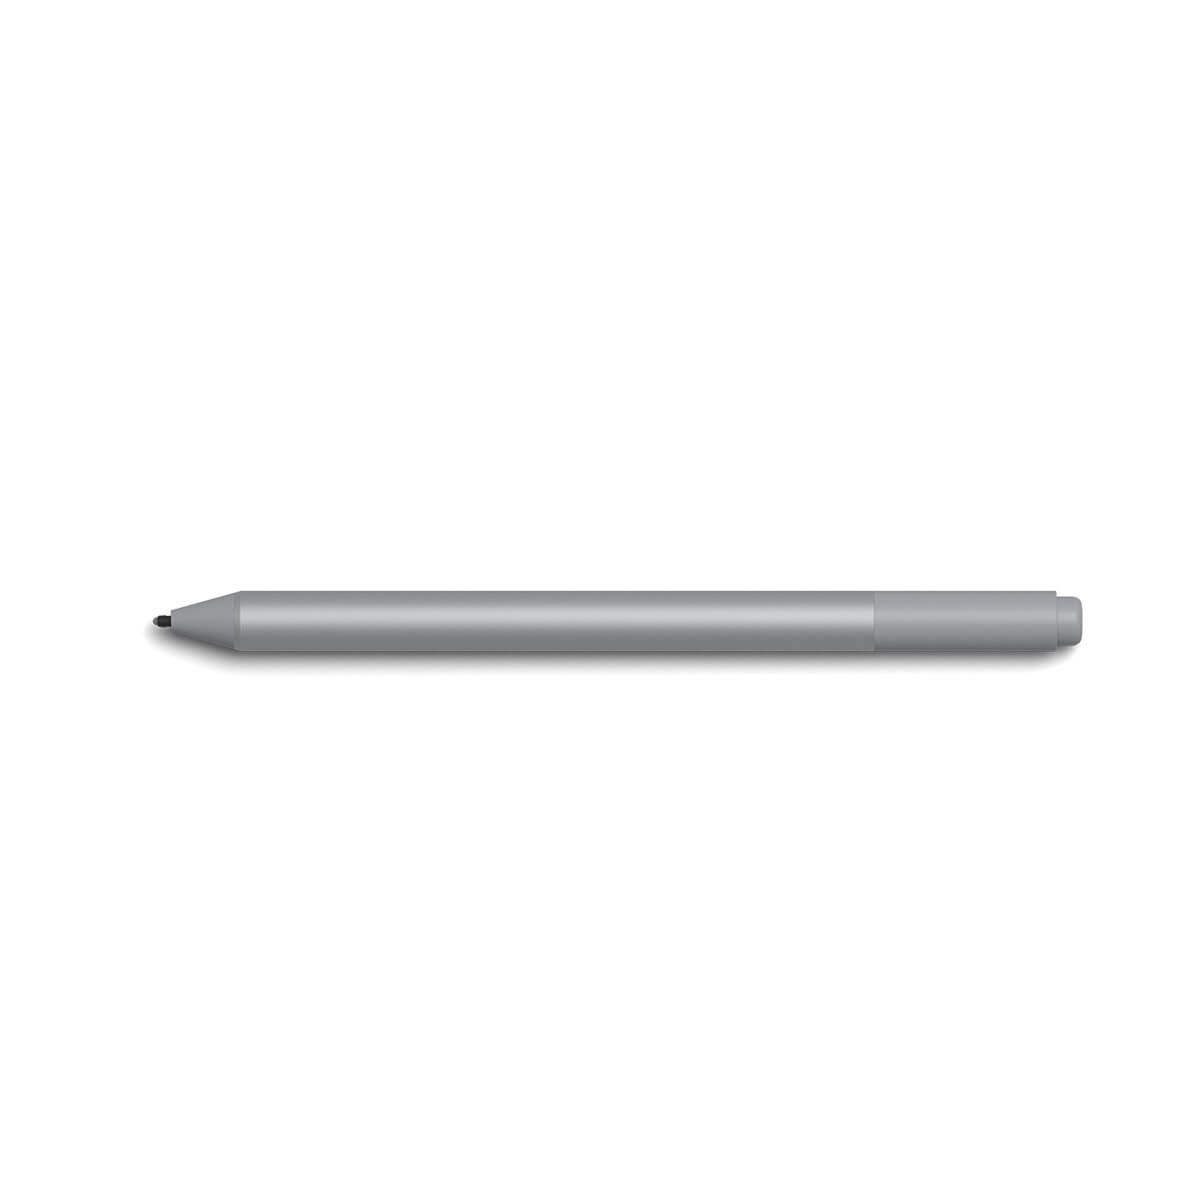 Surface Pen docking station rumors